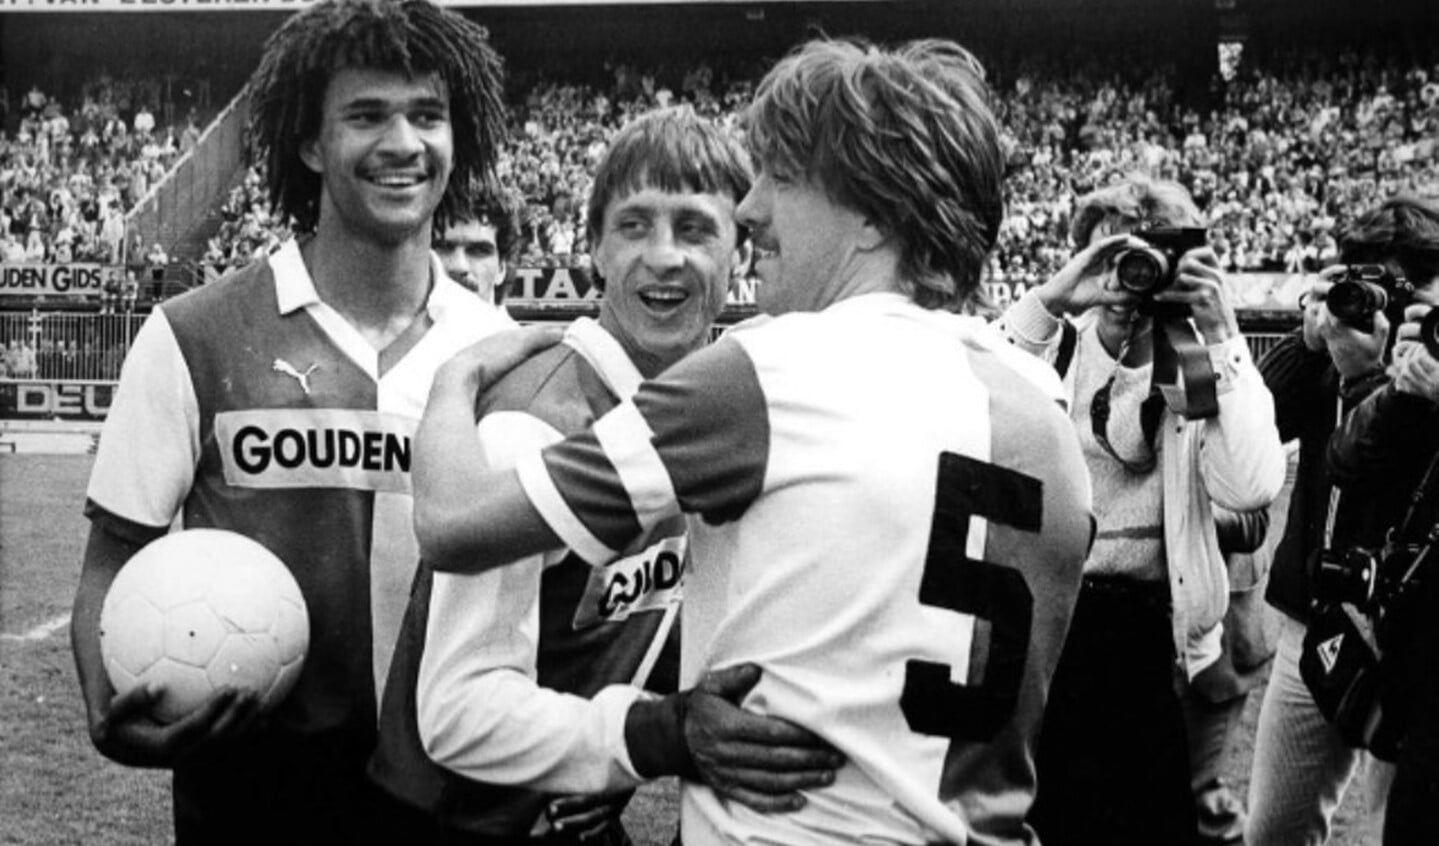 1984, Wijnstekers met Cruijff en Gullit in de Kuip. Dat jaar werd de ploeg landskampioen en wonnen de beker.